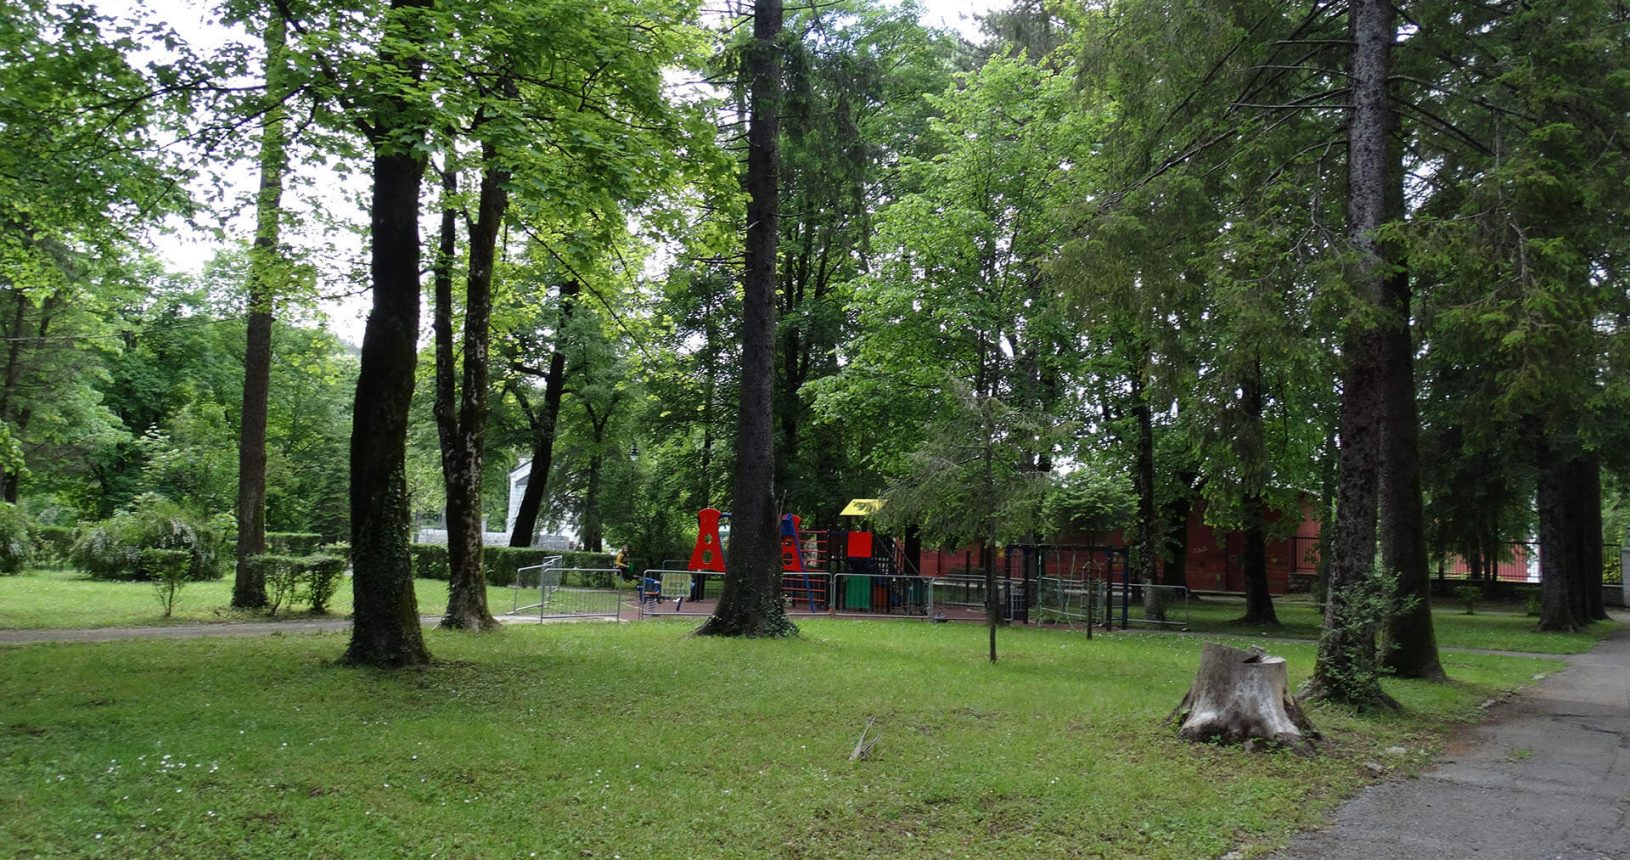 Cetinje area for kids in the park